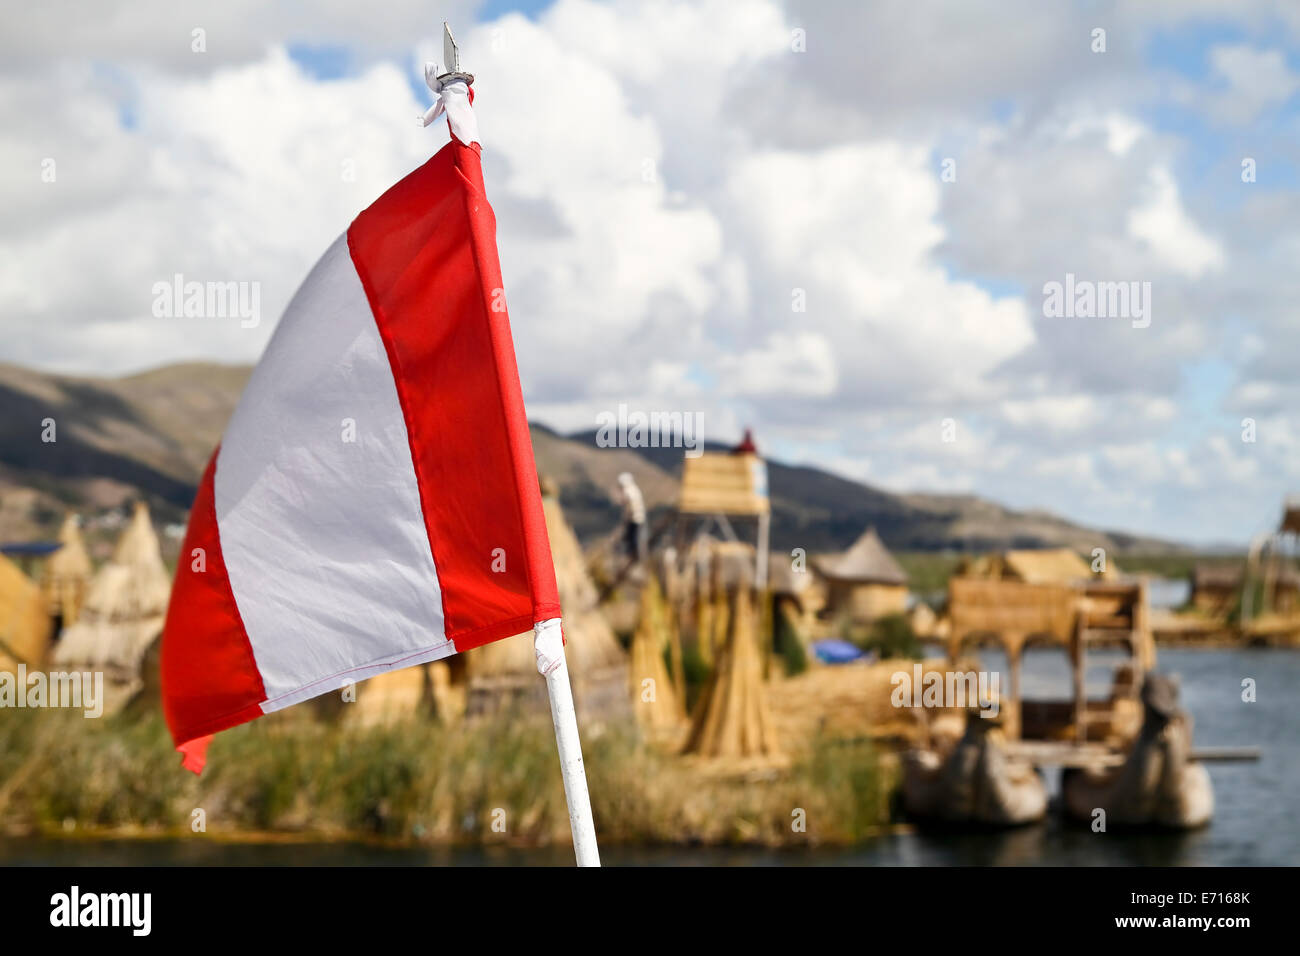 L'Amérique du Sud, Pérou, d'un drapeau du Pérou, les îles flottantes du Lac Titicaca en arrière-plan Banque D'Images